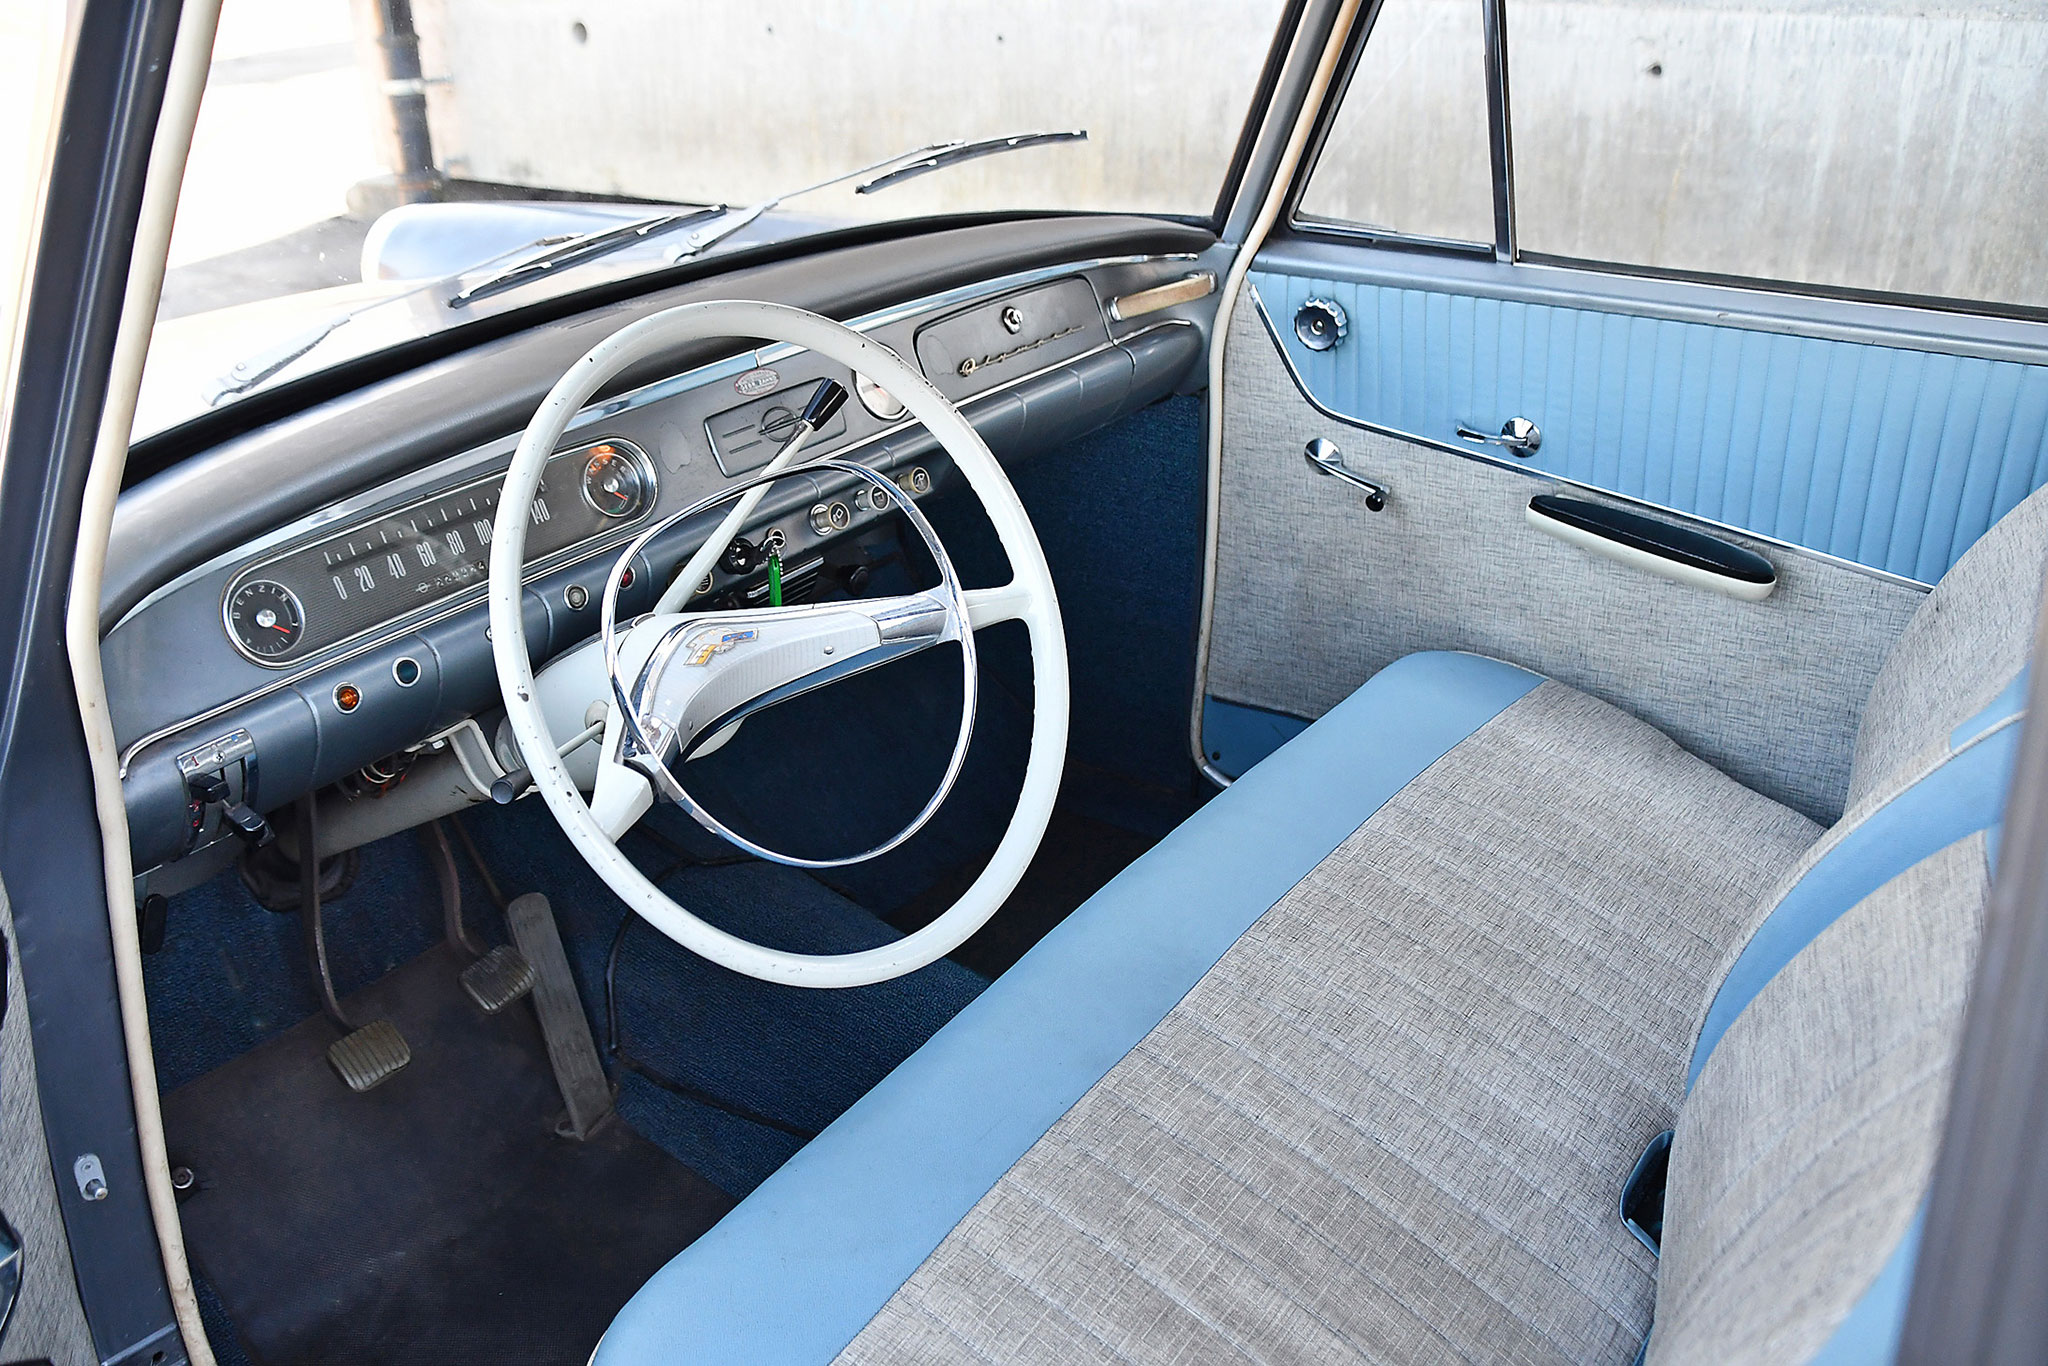 1961 Opel Olympia Rekord P1 – intérieur en état d’origine qui ne présente pas de défauts.